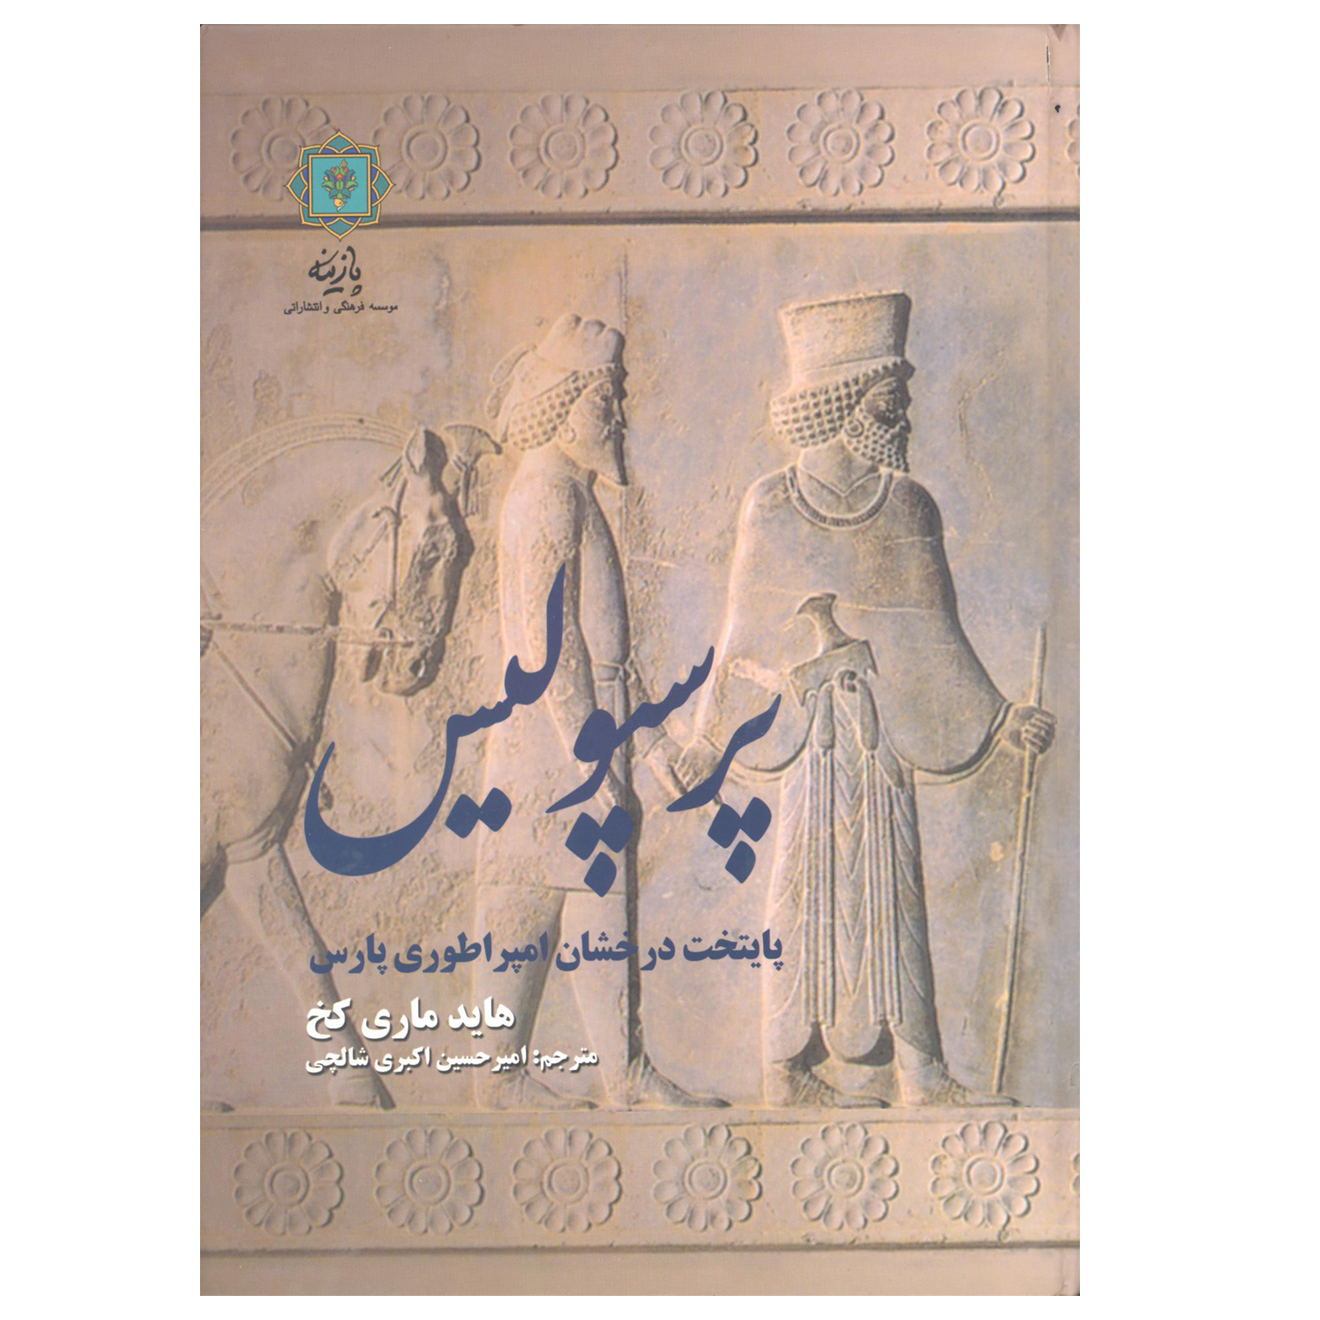 کتاب پرسپولیس پایتخت درخشان امپراتوری پارس اثر هاید ماری کخ نشر پازینه